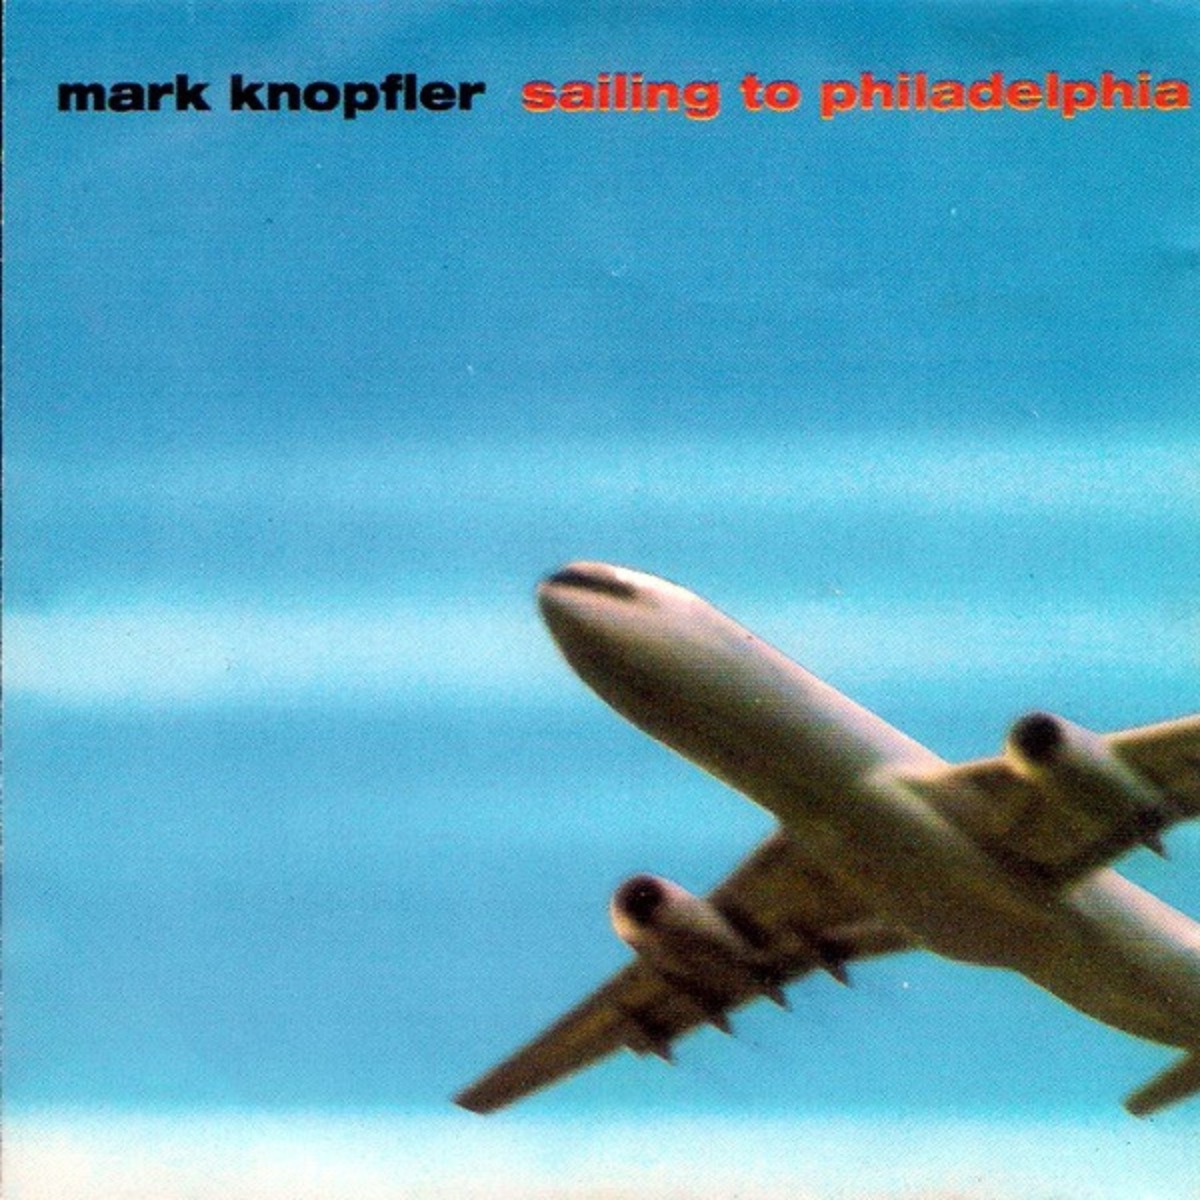 Couverture de l'album "Sailing to Philadelphia" de Mark Knopfler.